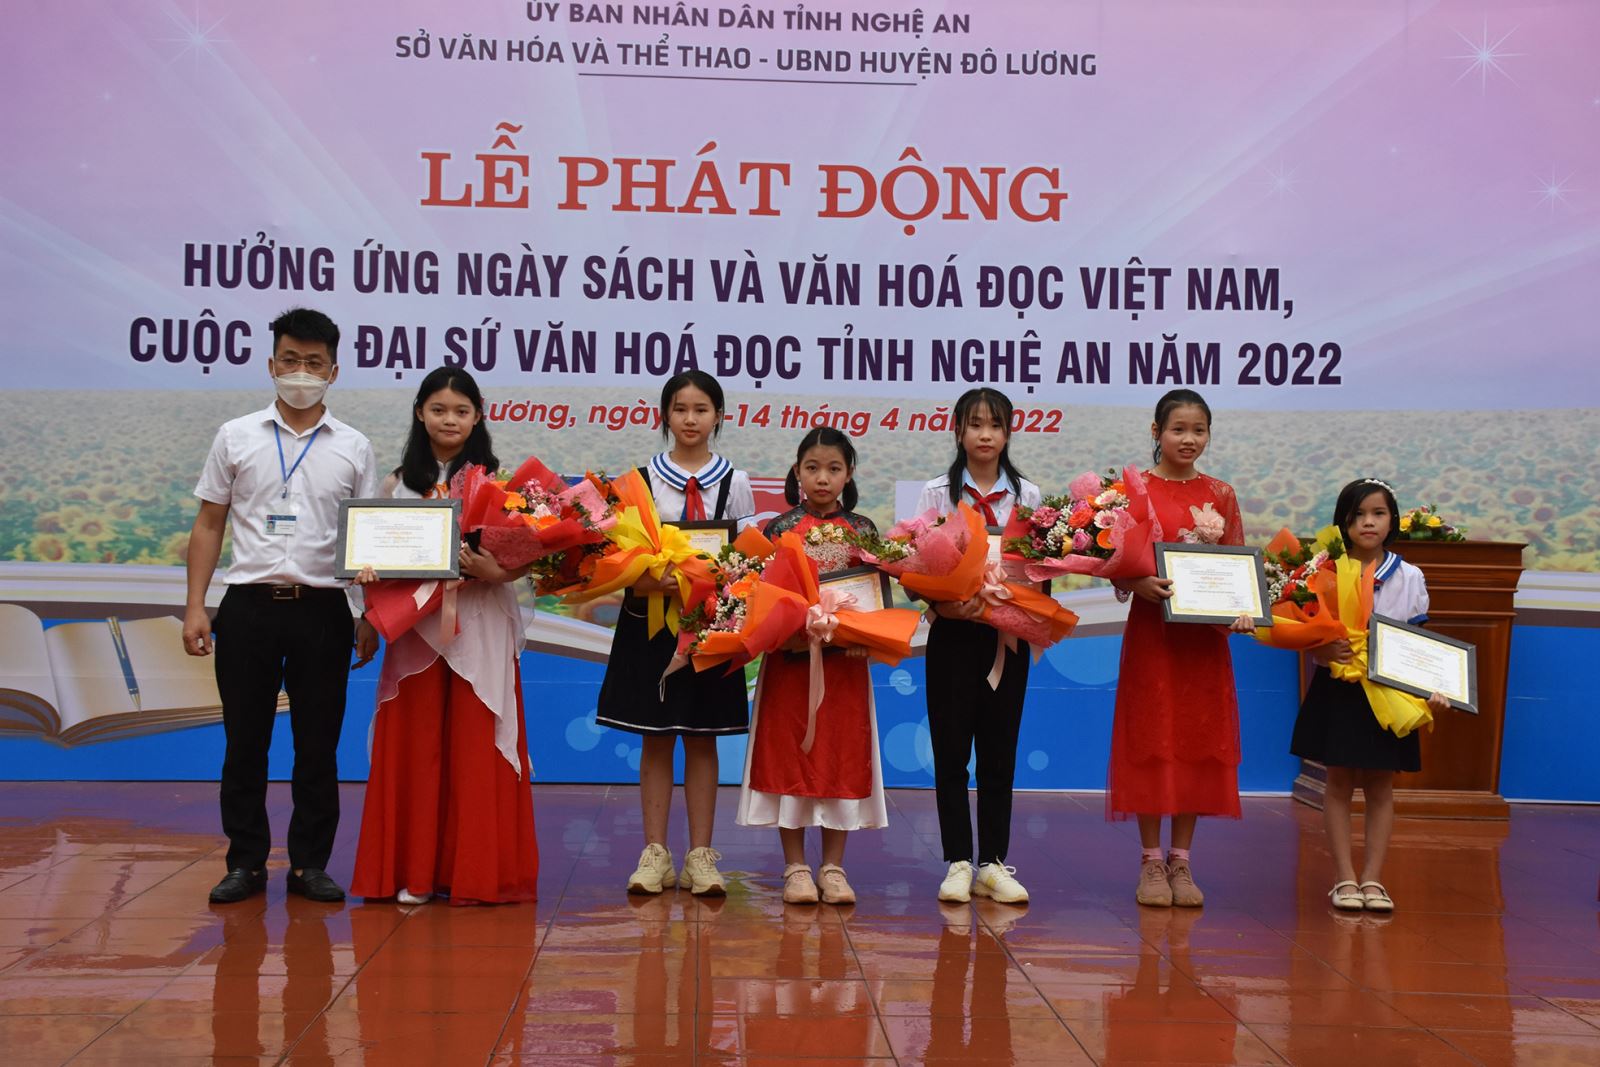 NGHỆ AN: Phát động hưởng ứng Ngày Sách và Văn hóa đọc Việt Nam - Cuộc thi Đại sứ văn hóa đọc Nghệ An lần thứ 4, năm 2022